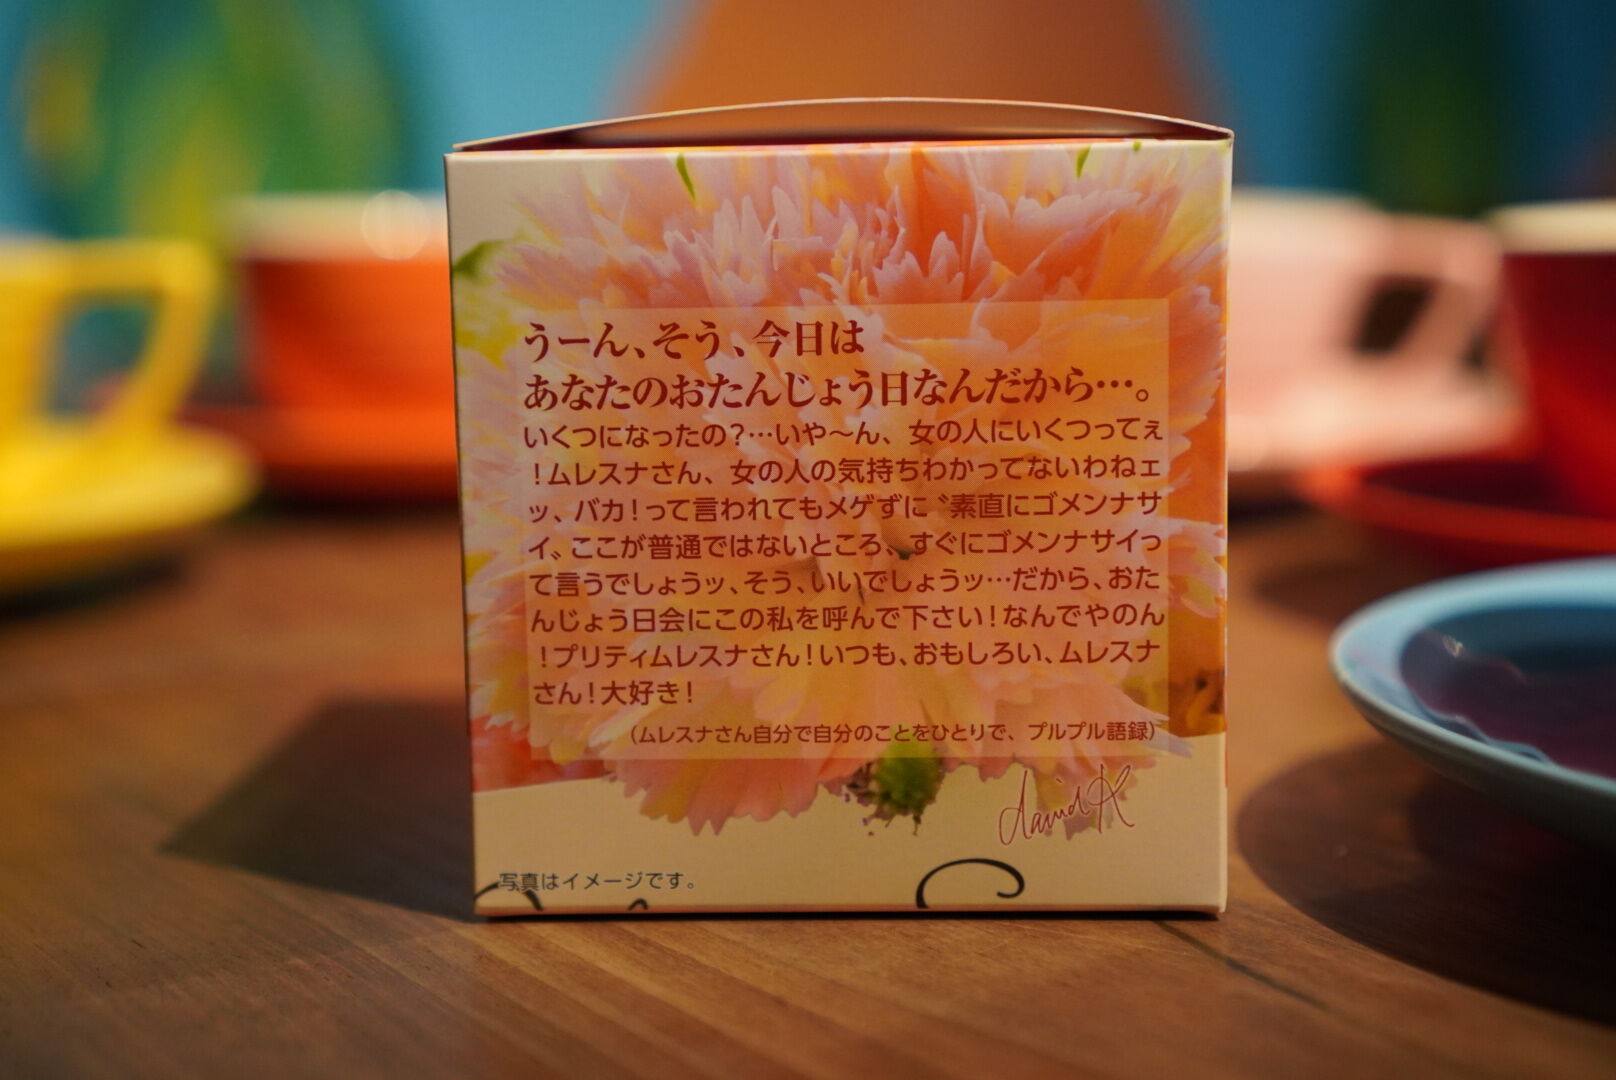 紅茶 ムレスナティー 亜麻色のミルクティー HAPPY BIRTHDAY の紅茶